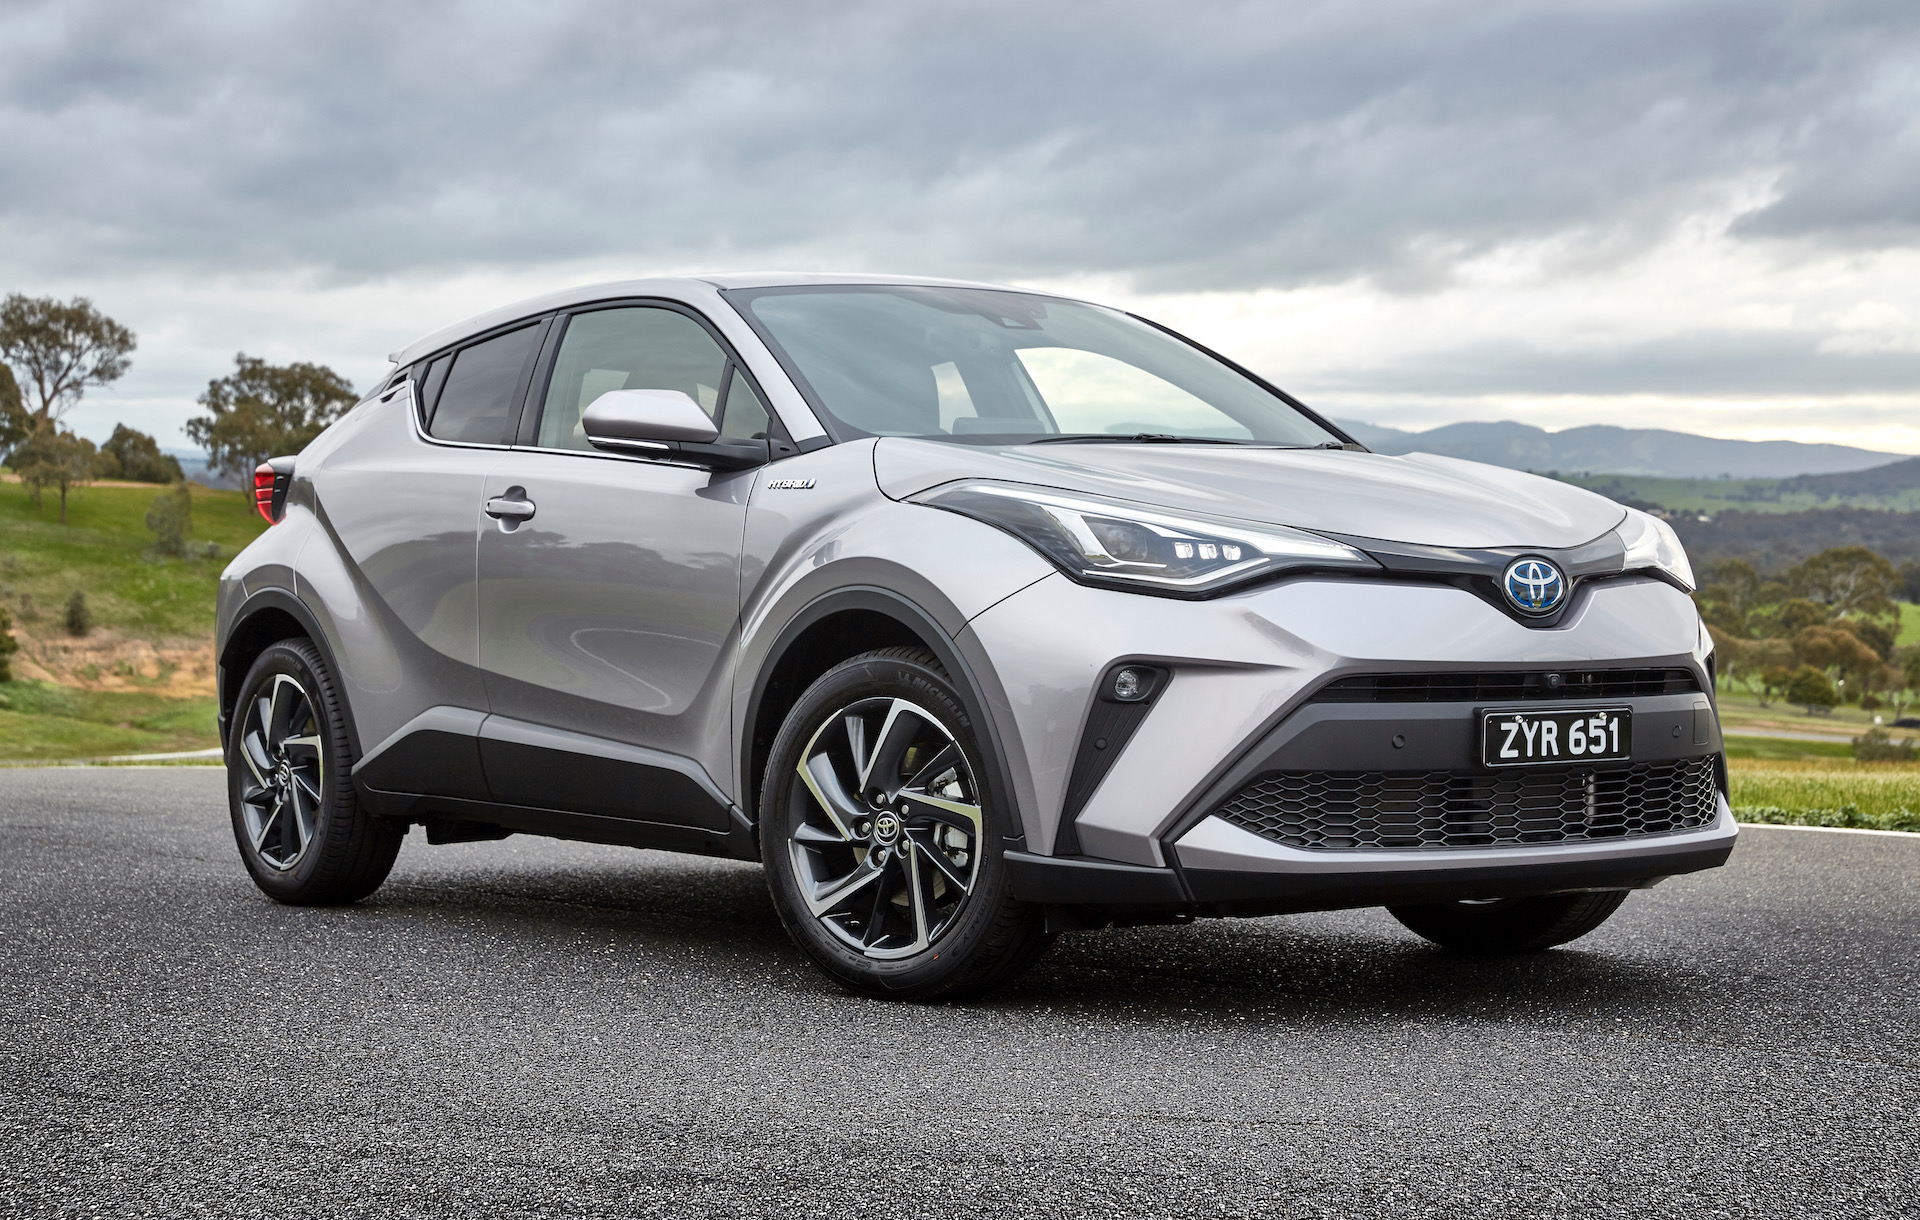 2020 Toyota CHR Hybrid confirmed for Australia